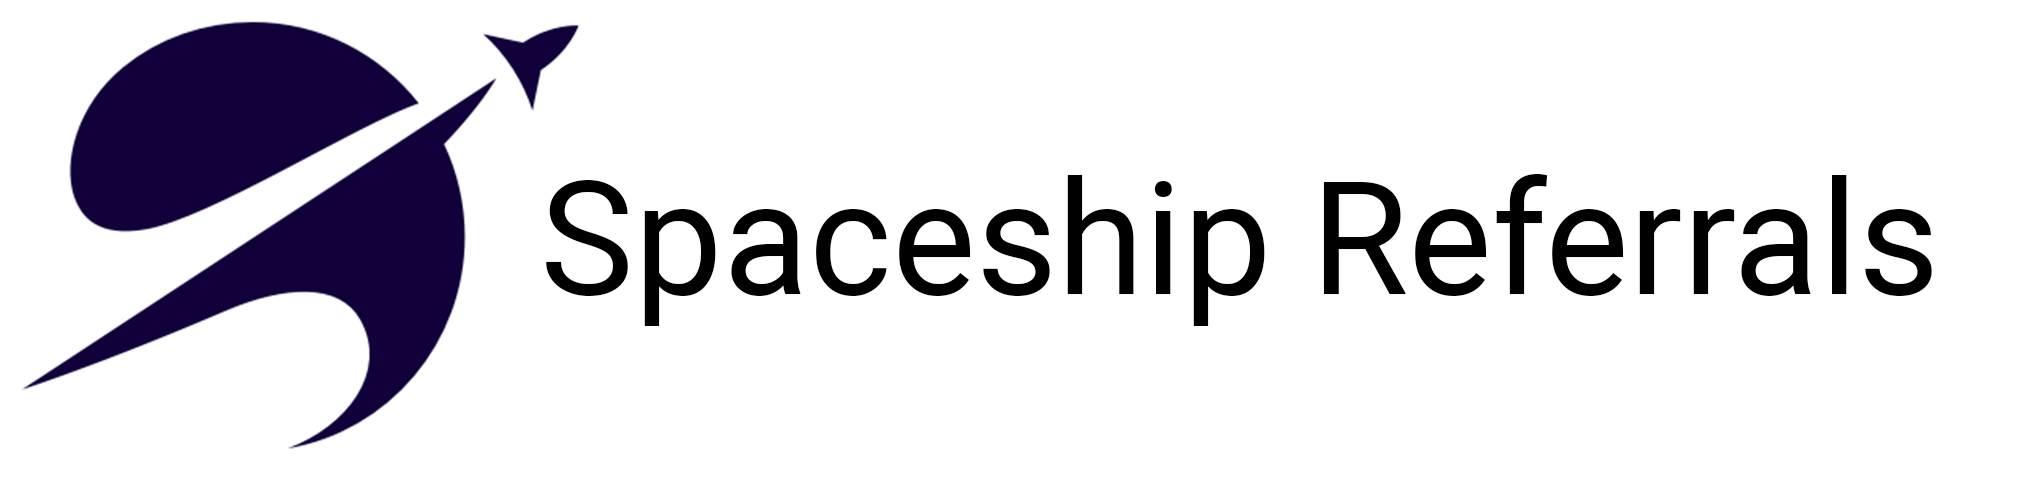 Spaceshipreferrals